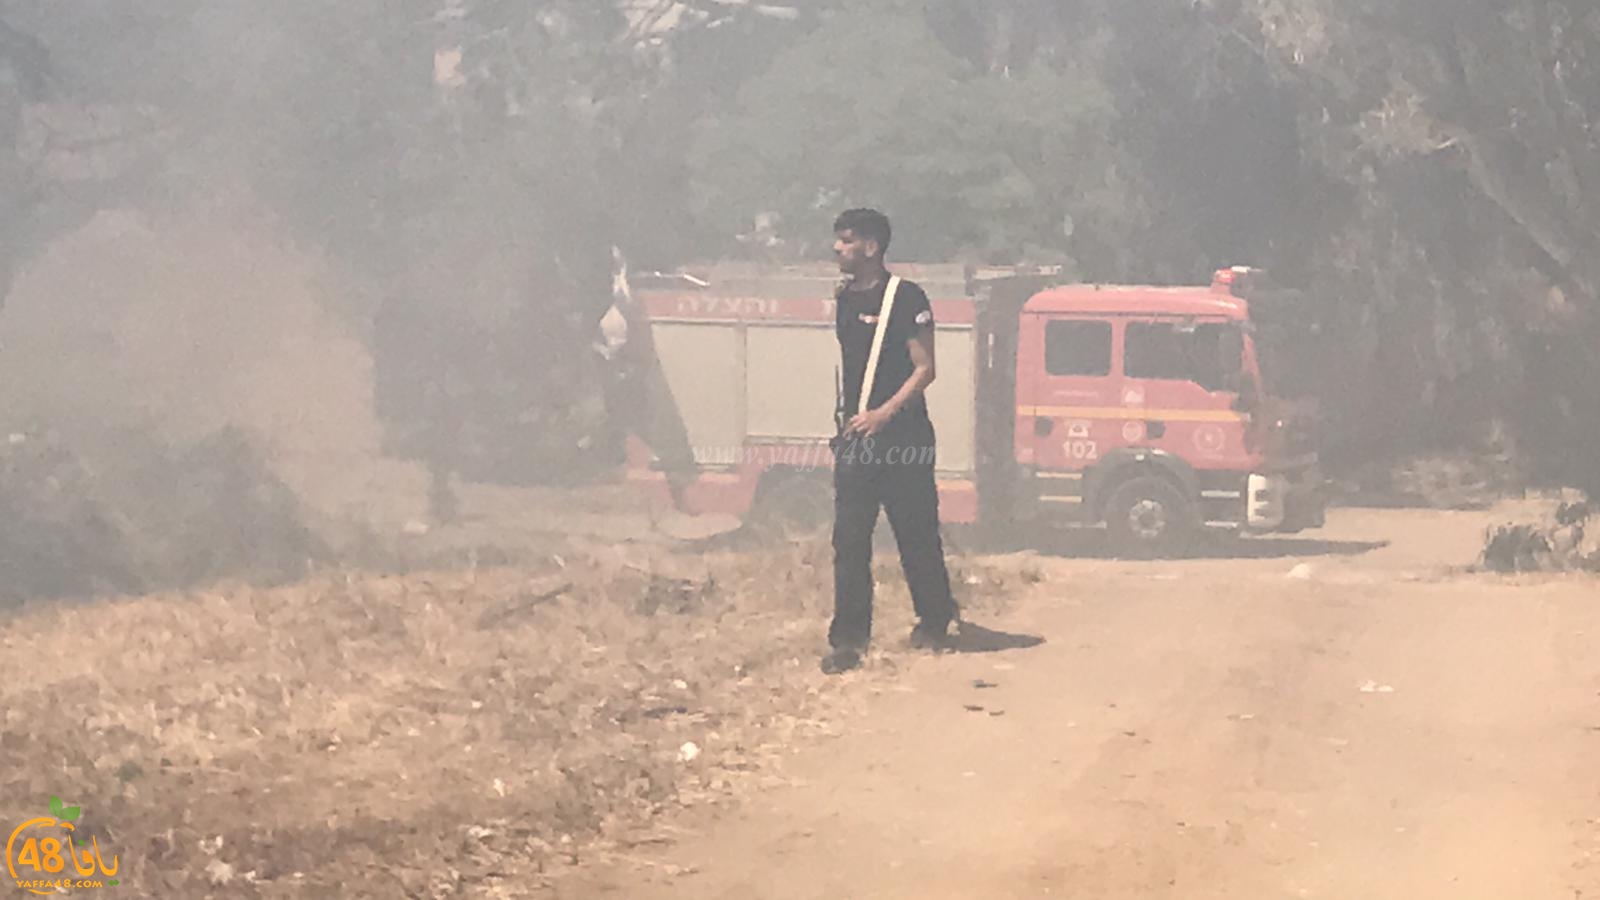  بالفيديو: اندلاع حريق داخل حرش في يافا وطواقم الاطفائية تعمل على اخماده 